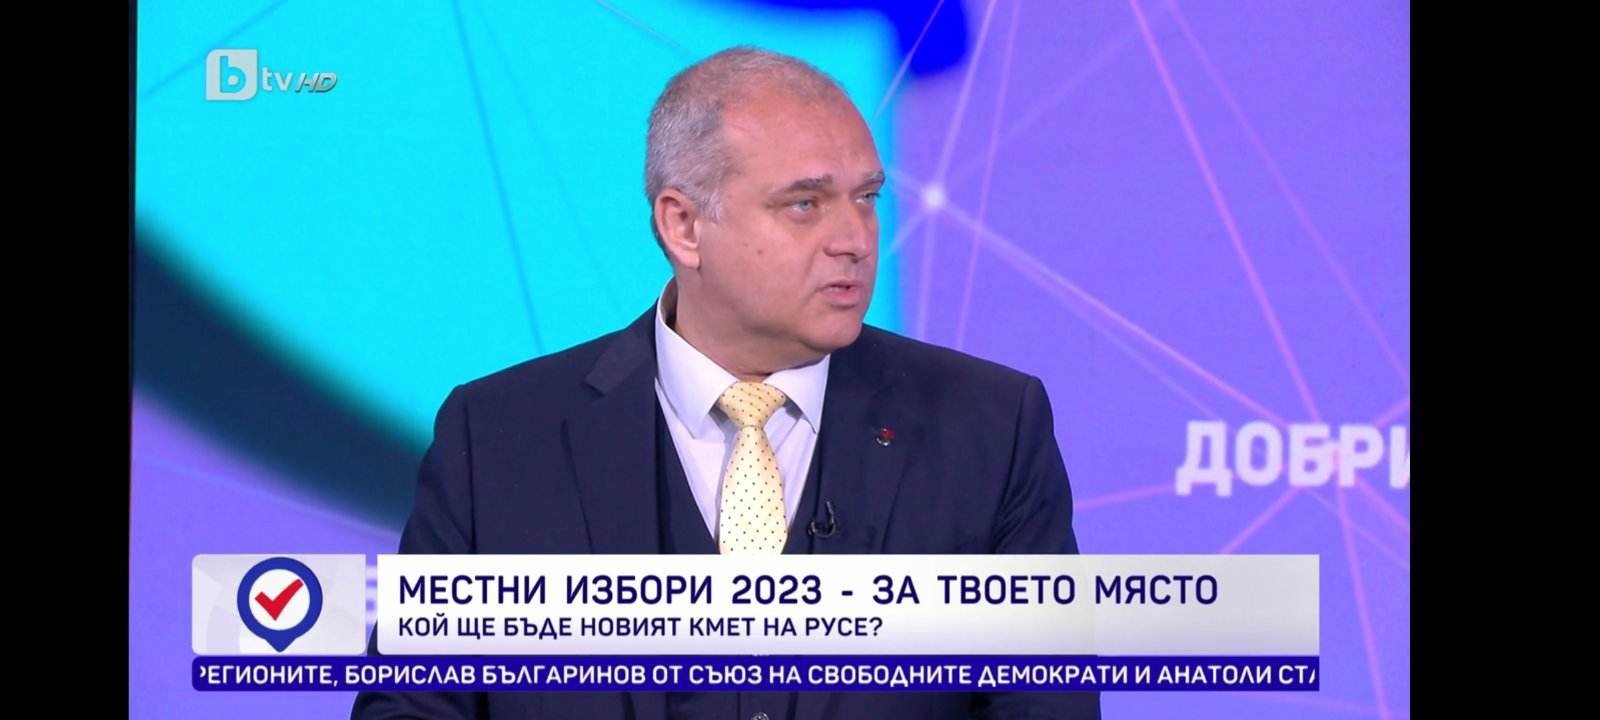  Искрен Веселинов победи убедително в дебата за Русе по БТВ